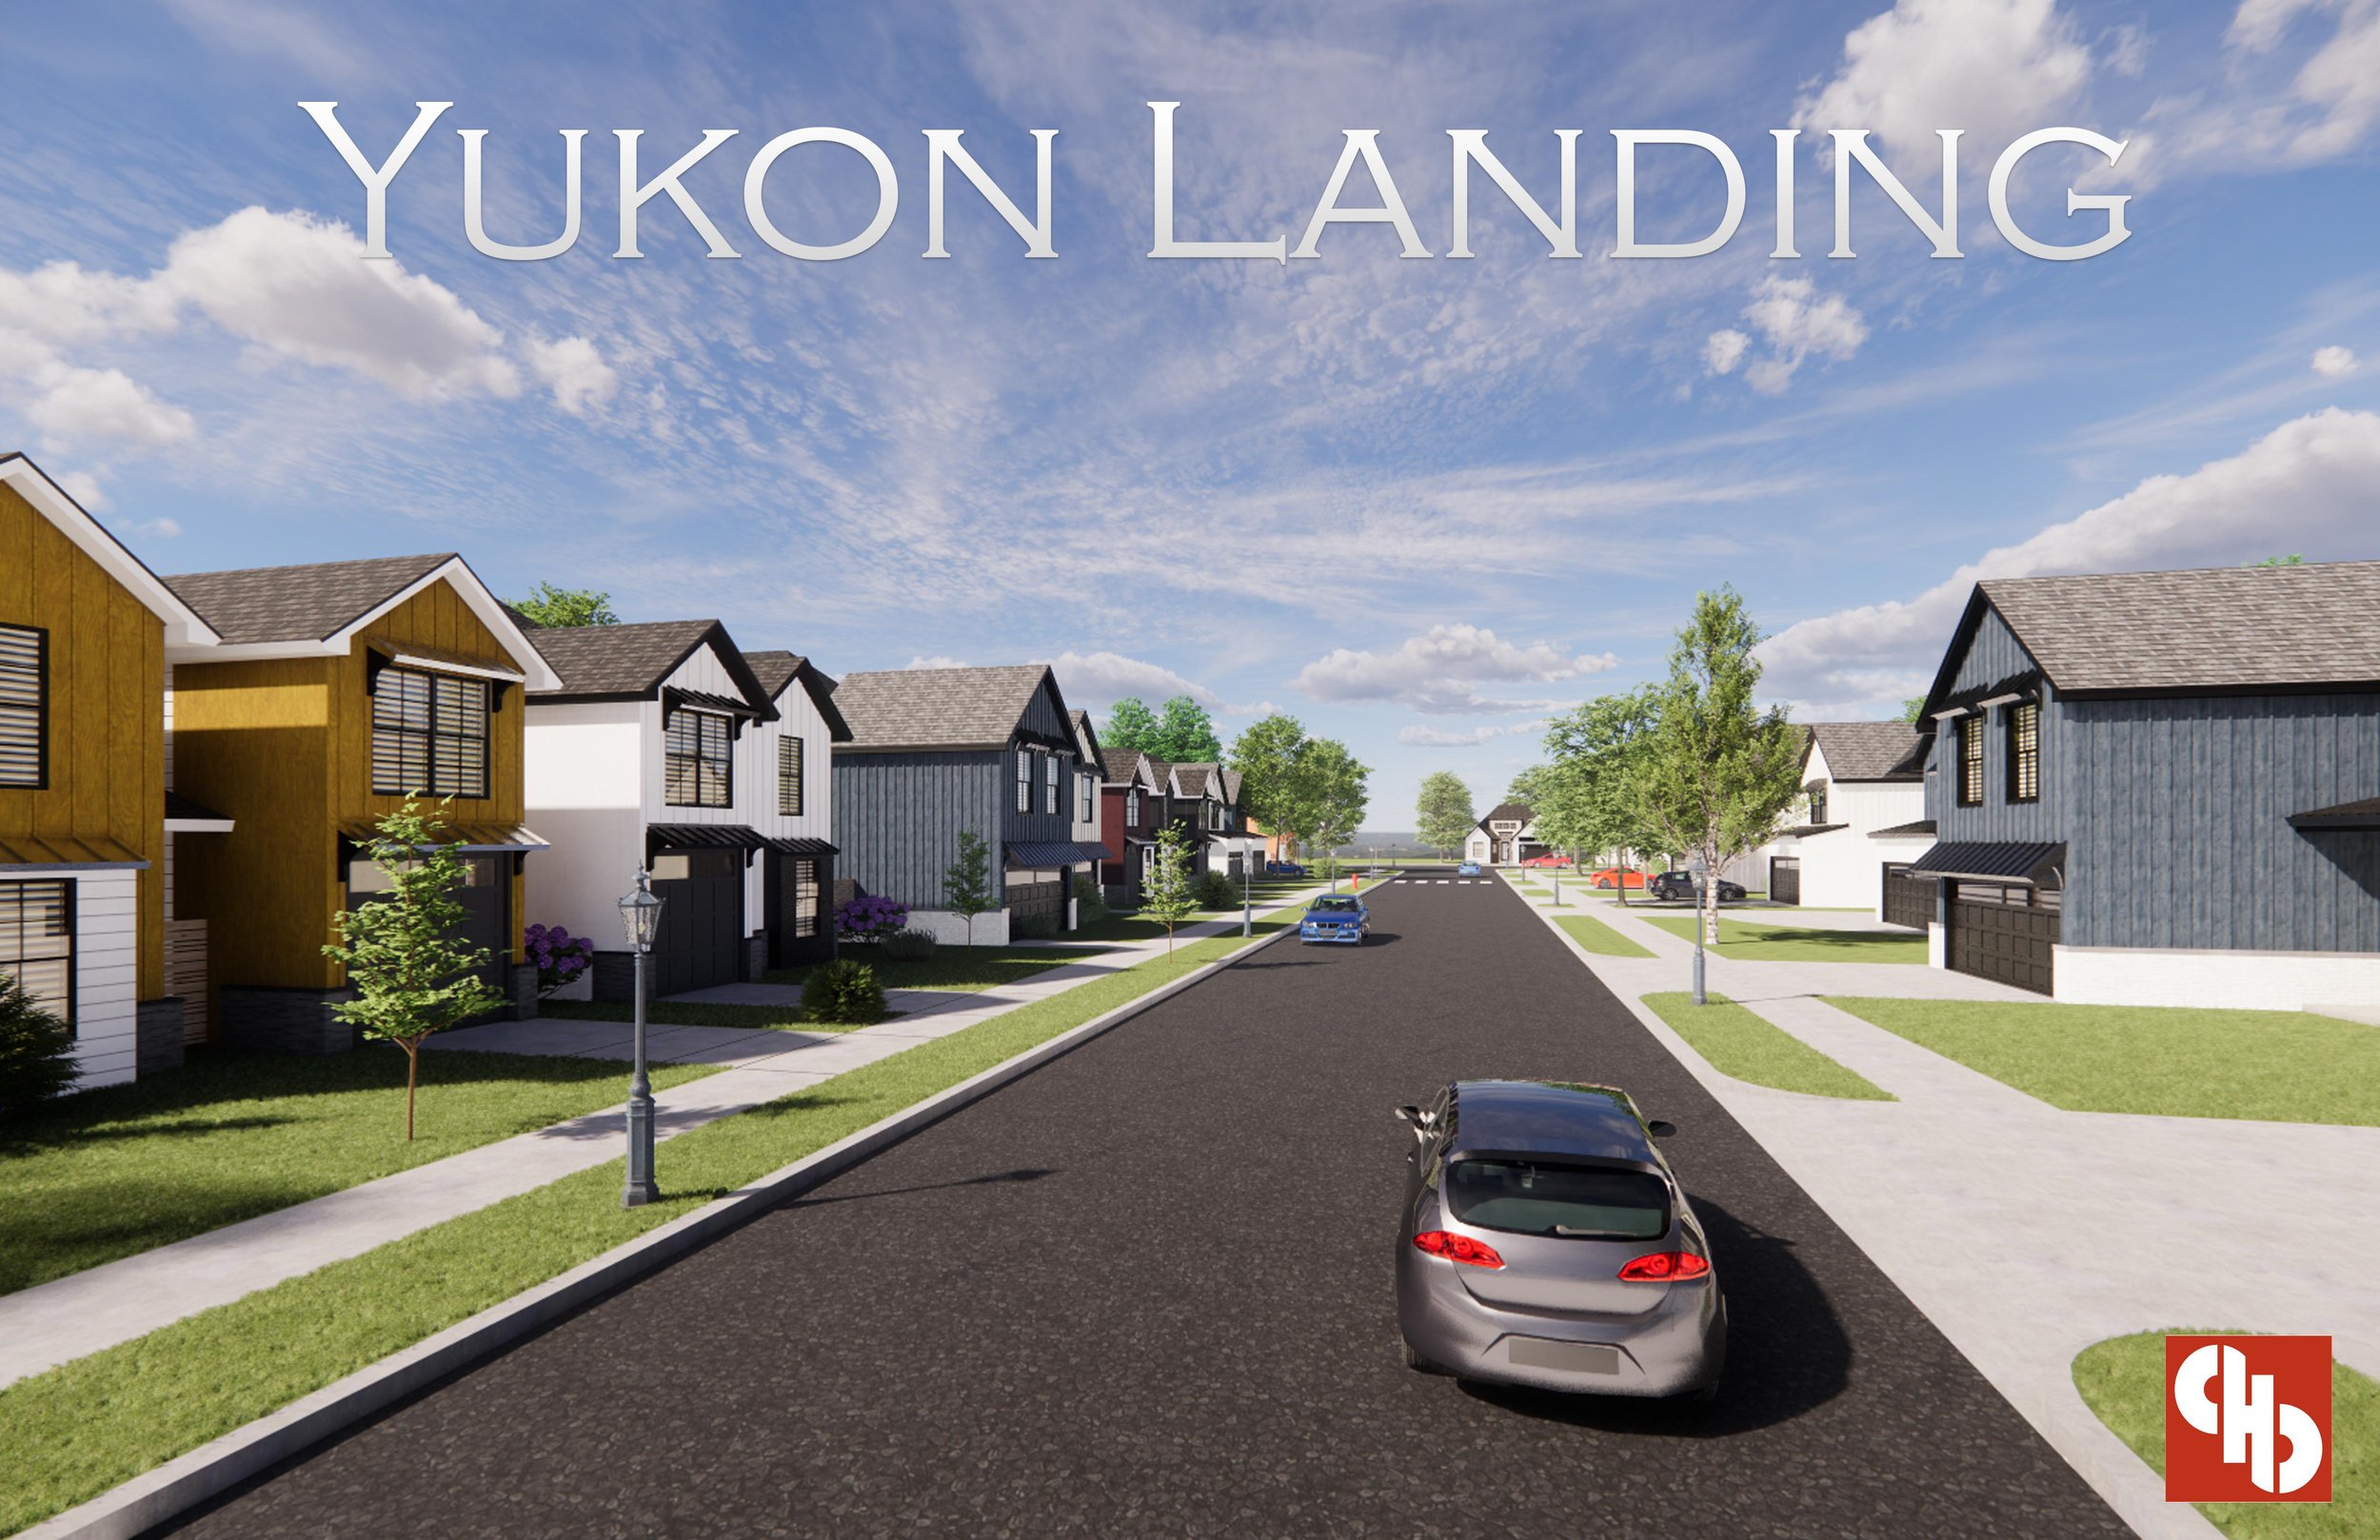 Yukon Landing 1.jpg